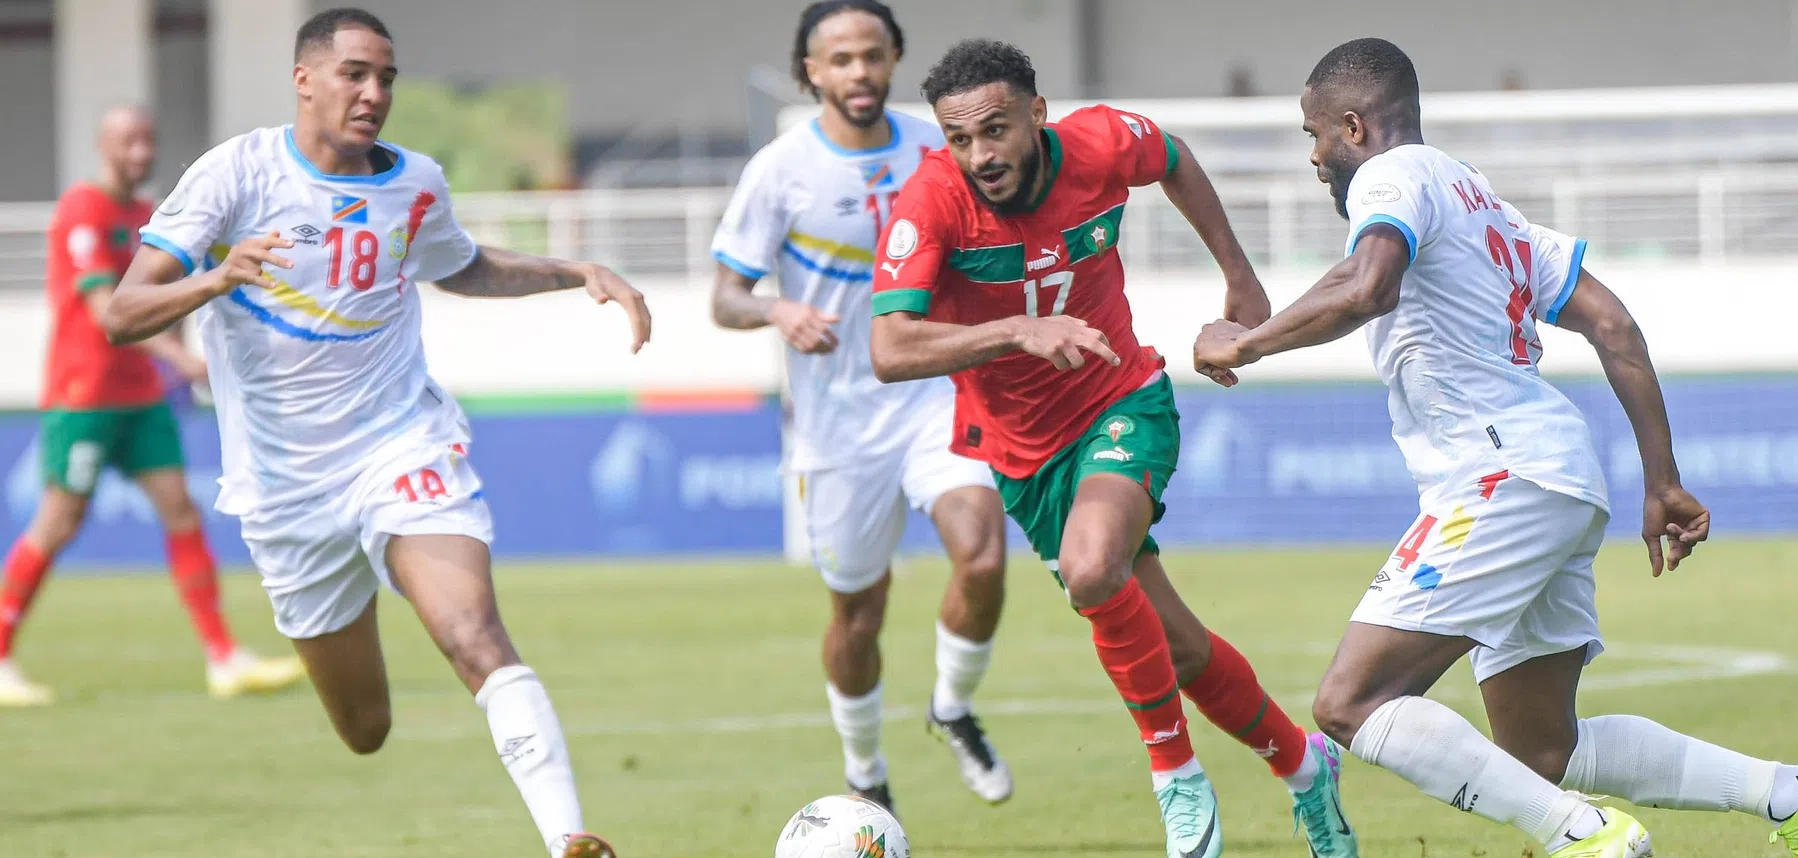 Marokko wint van Zambia en gaat als groepshoofd verder in de Afrika Cup